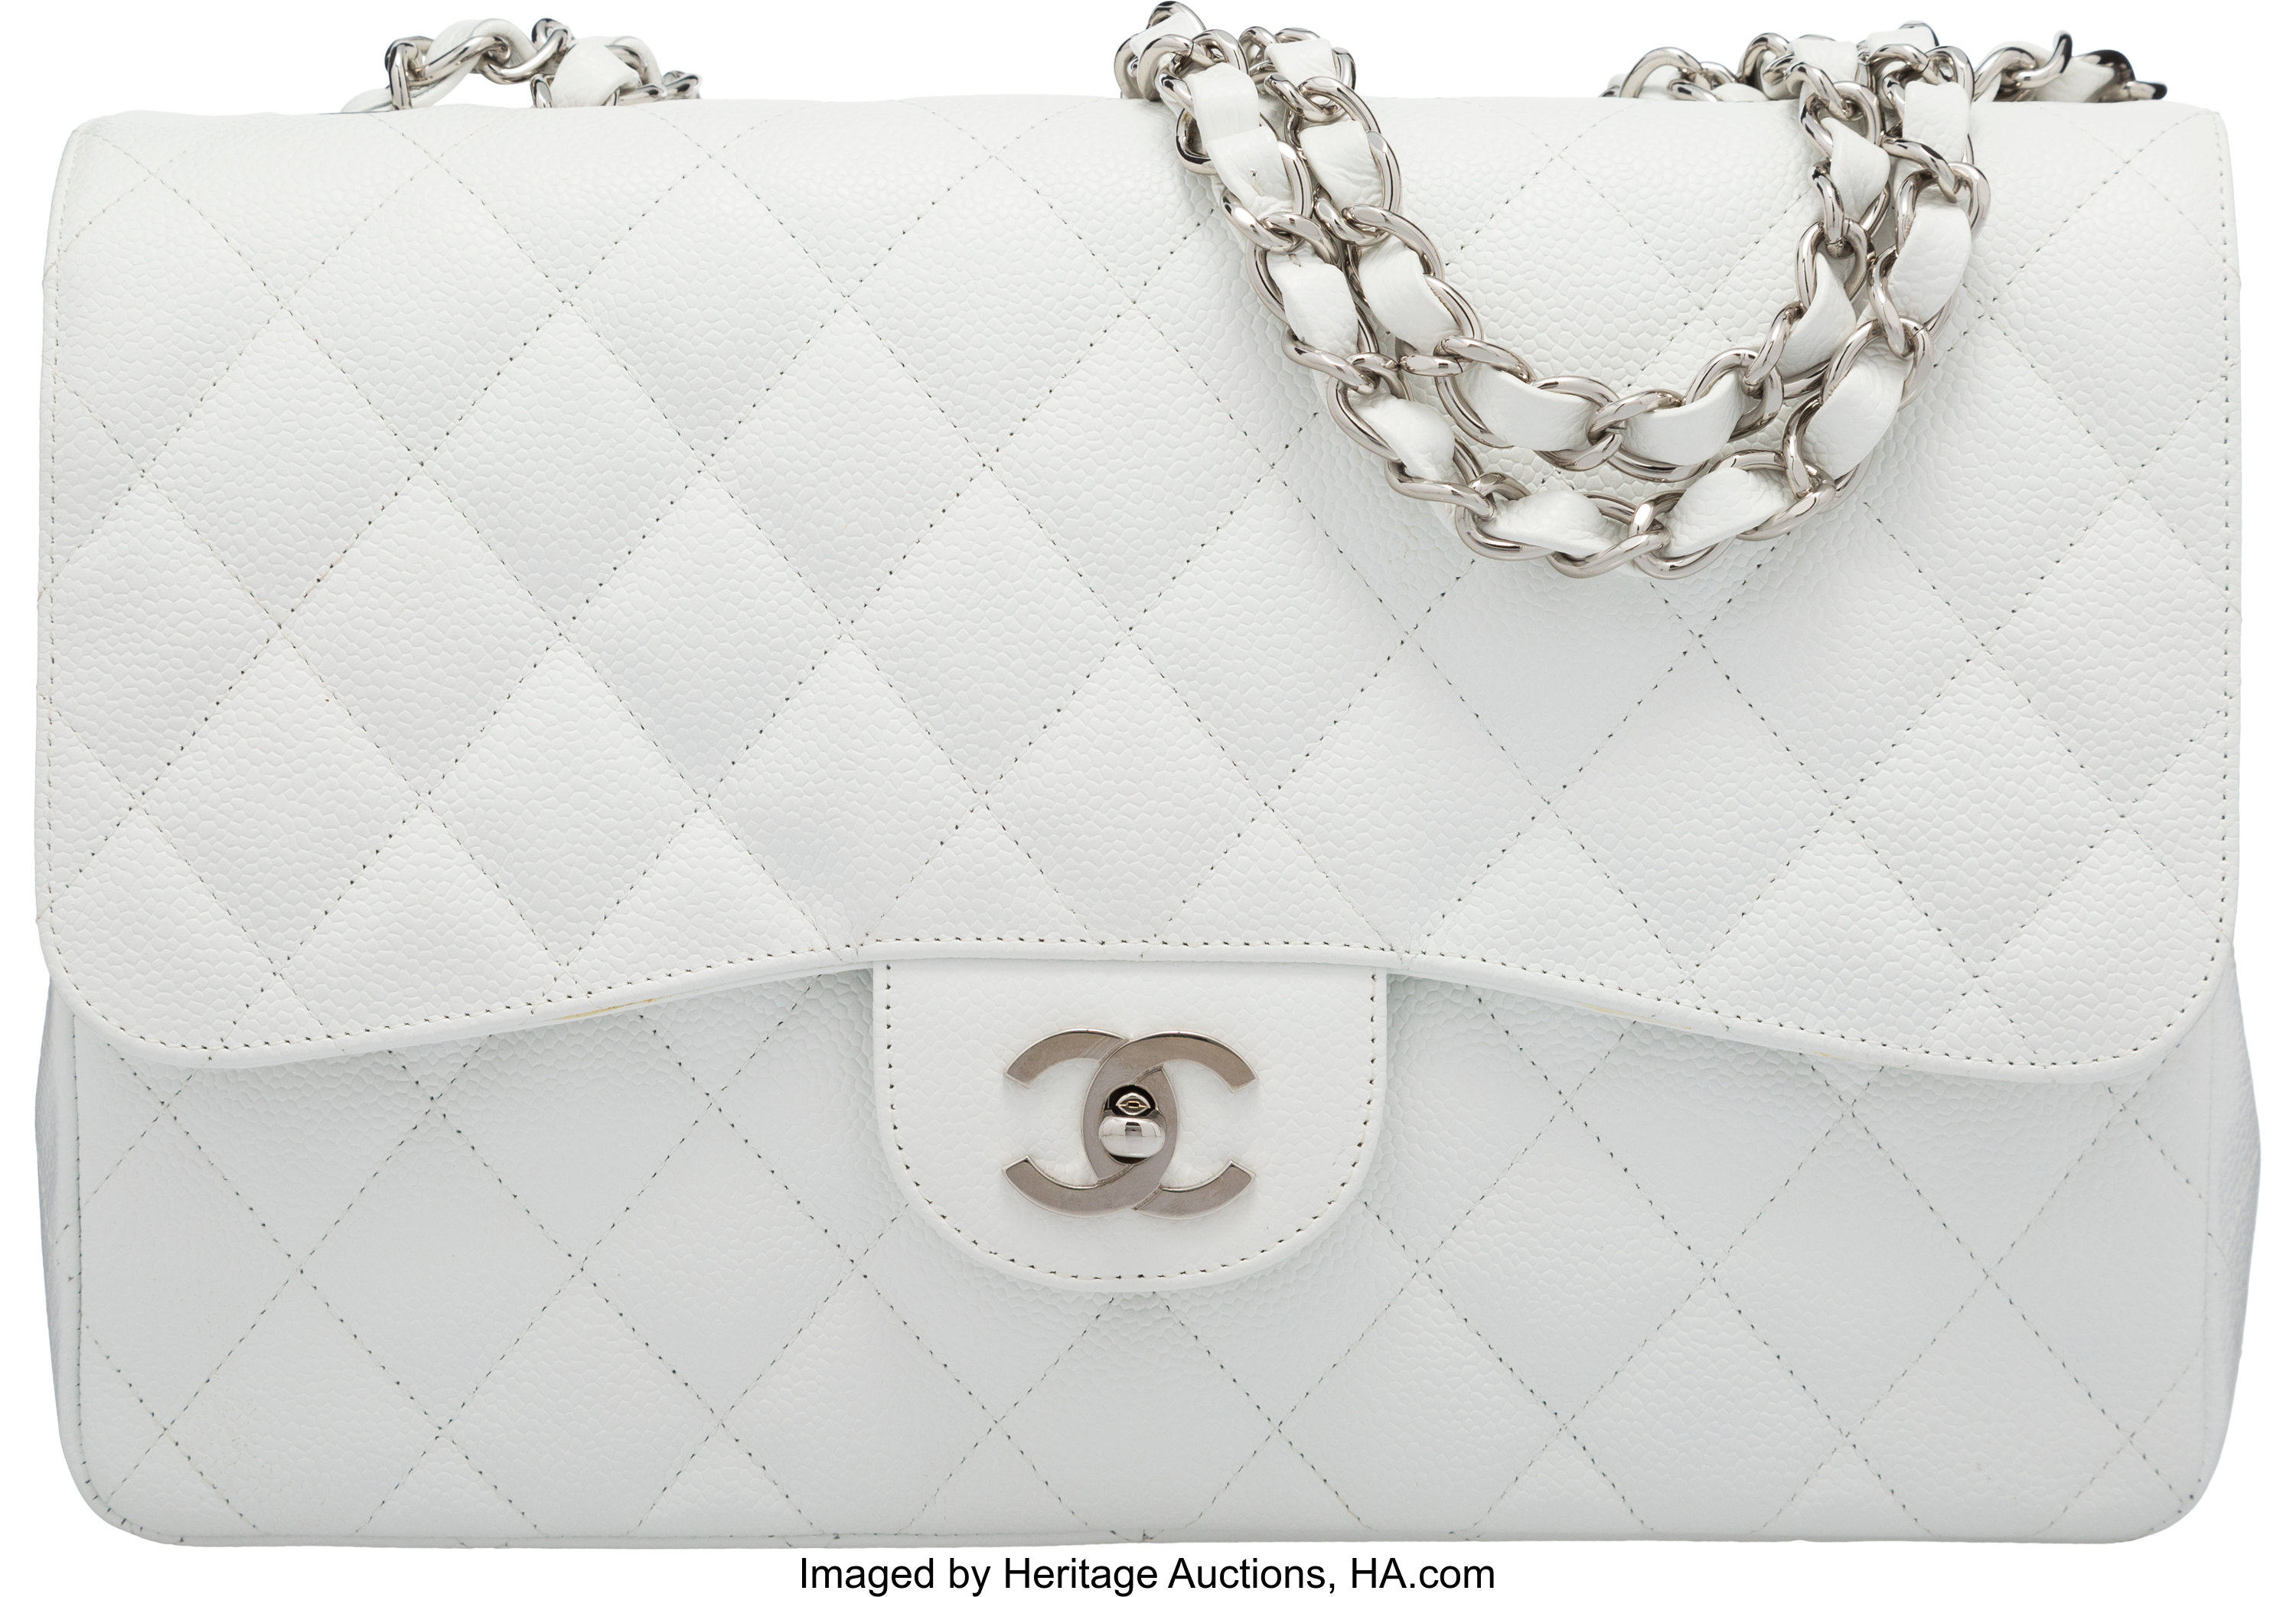 Chanel White Handbag – Flap Designer Bag in 2023  Chanel white handbags,  Chanel flap bag, Chanel bag